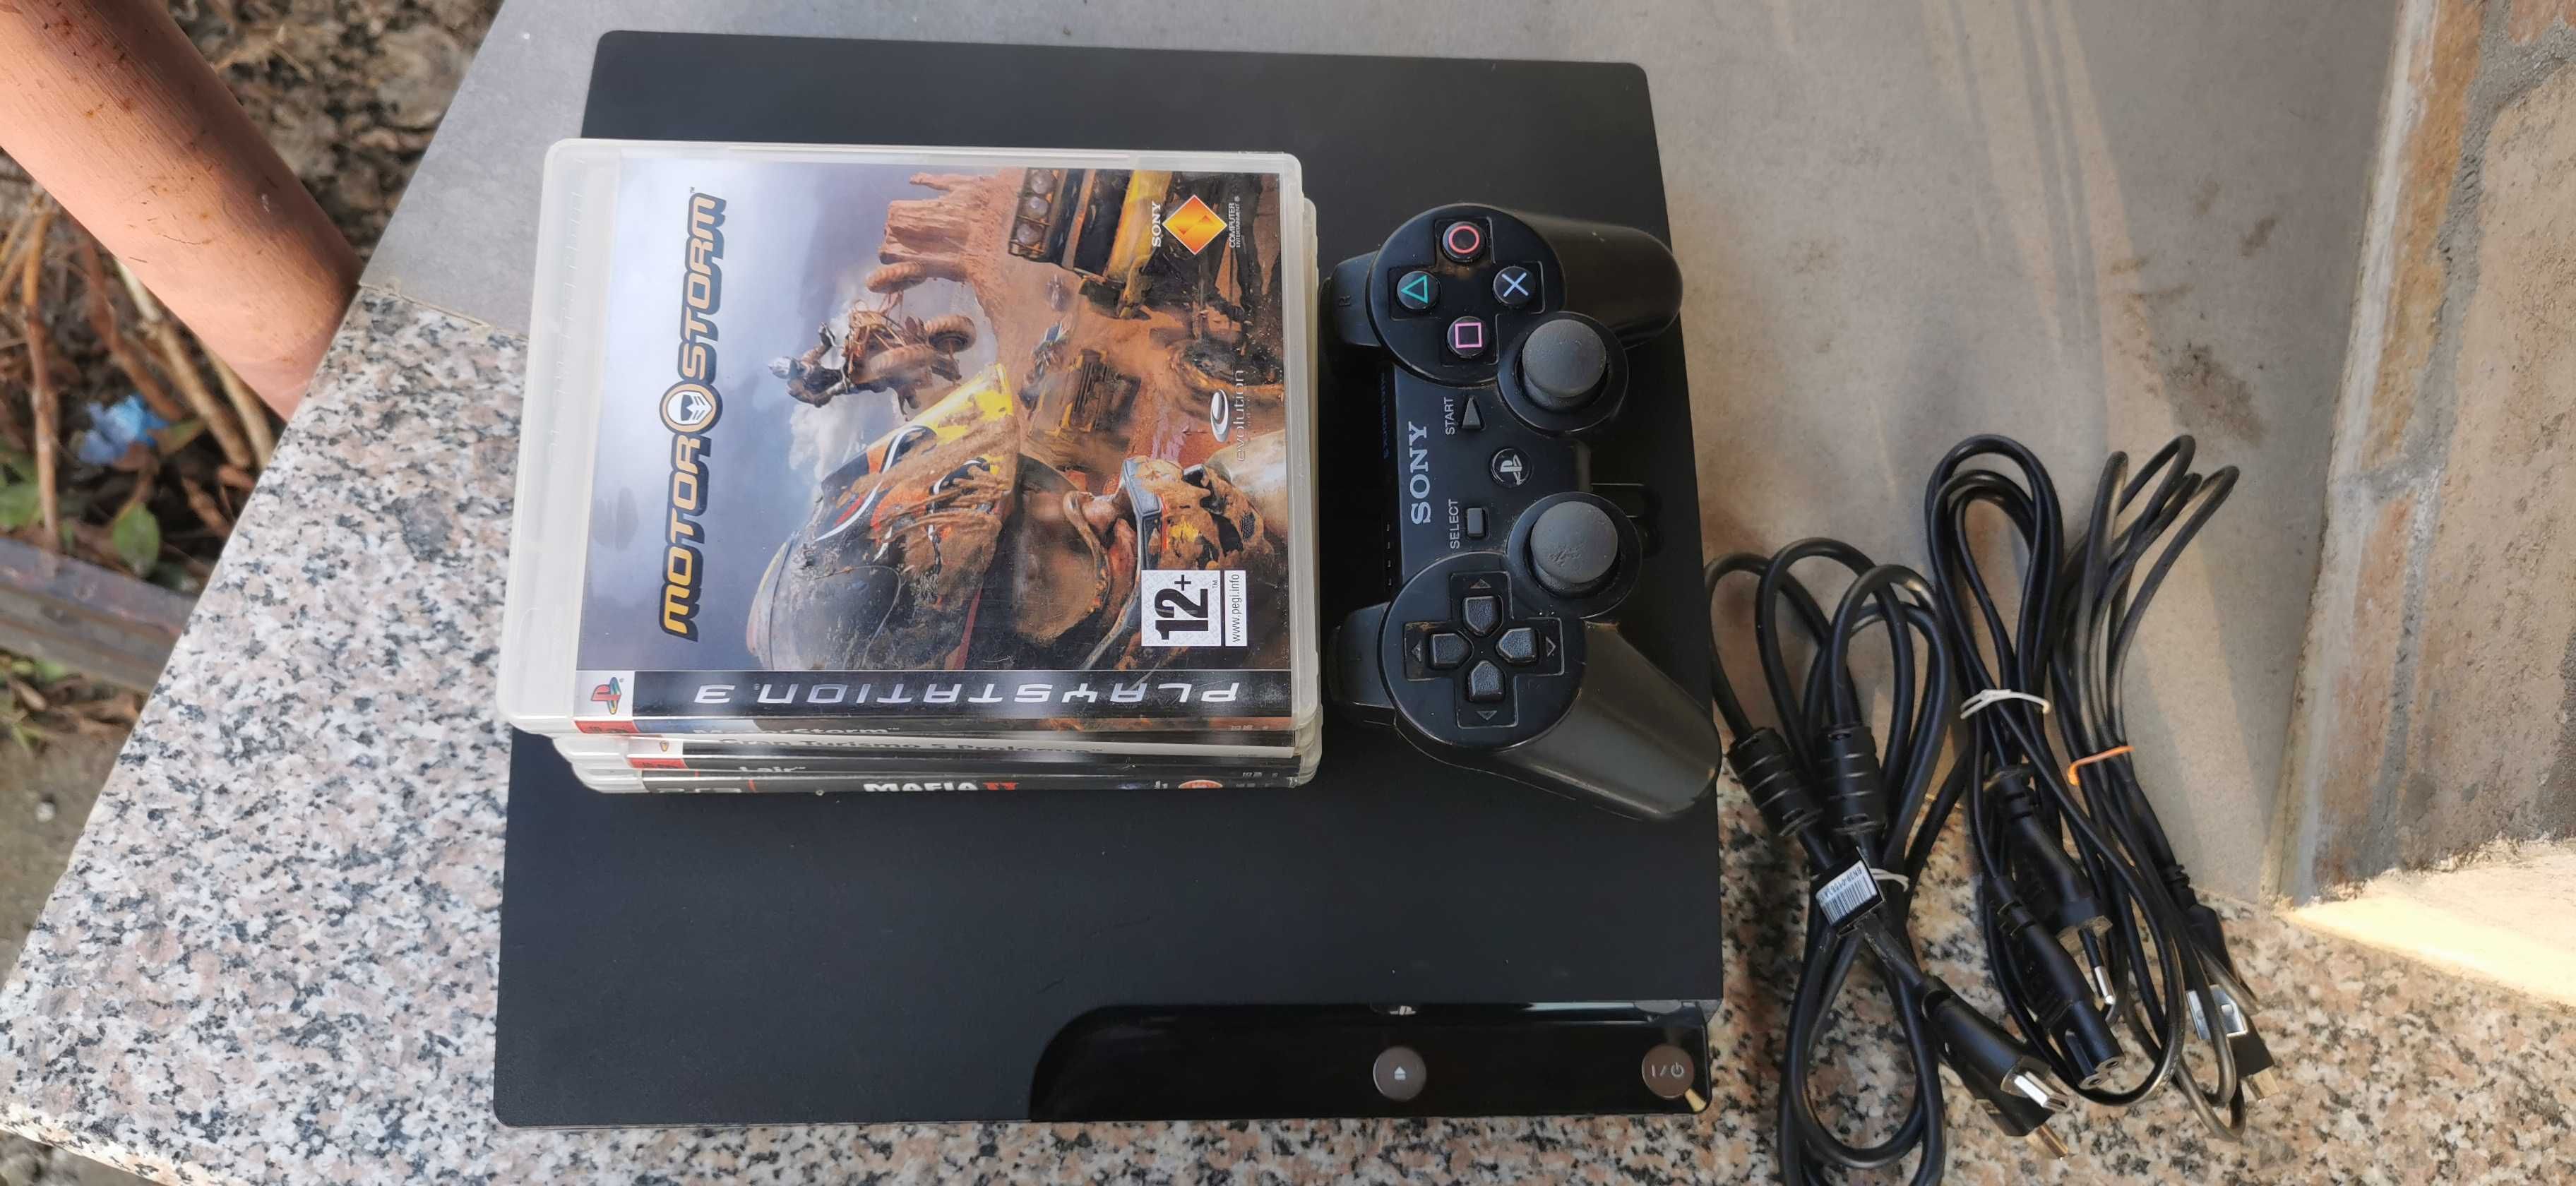 Consola PS3 cu o maneta si 4 jocuri